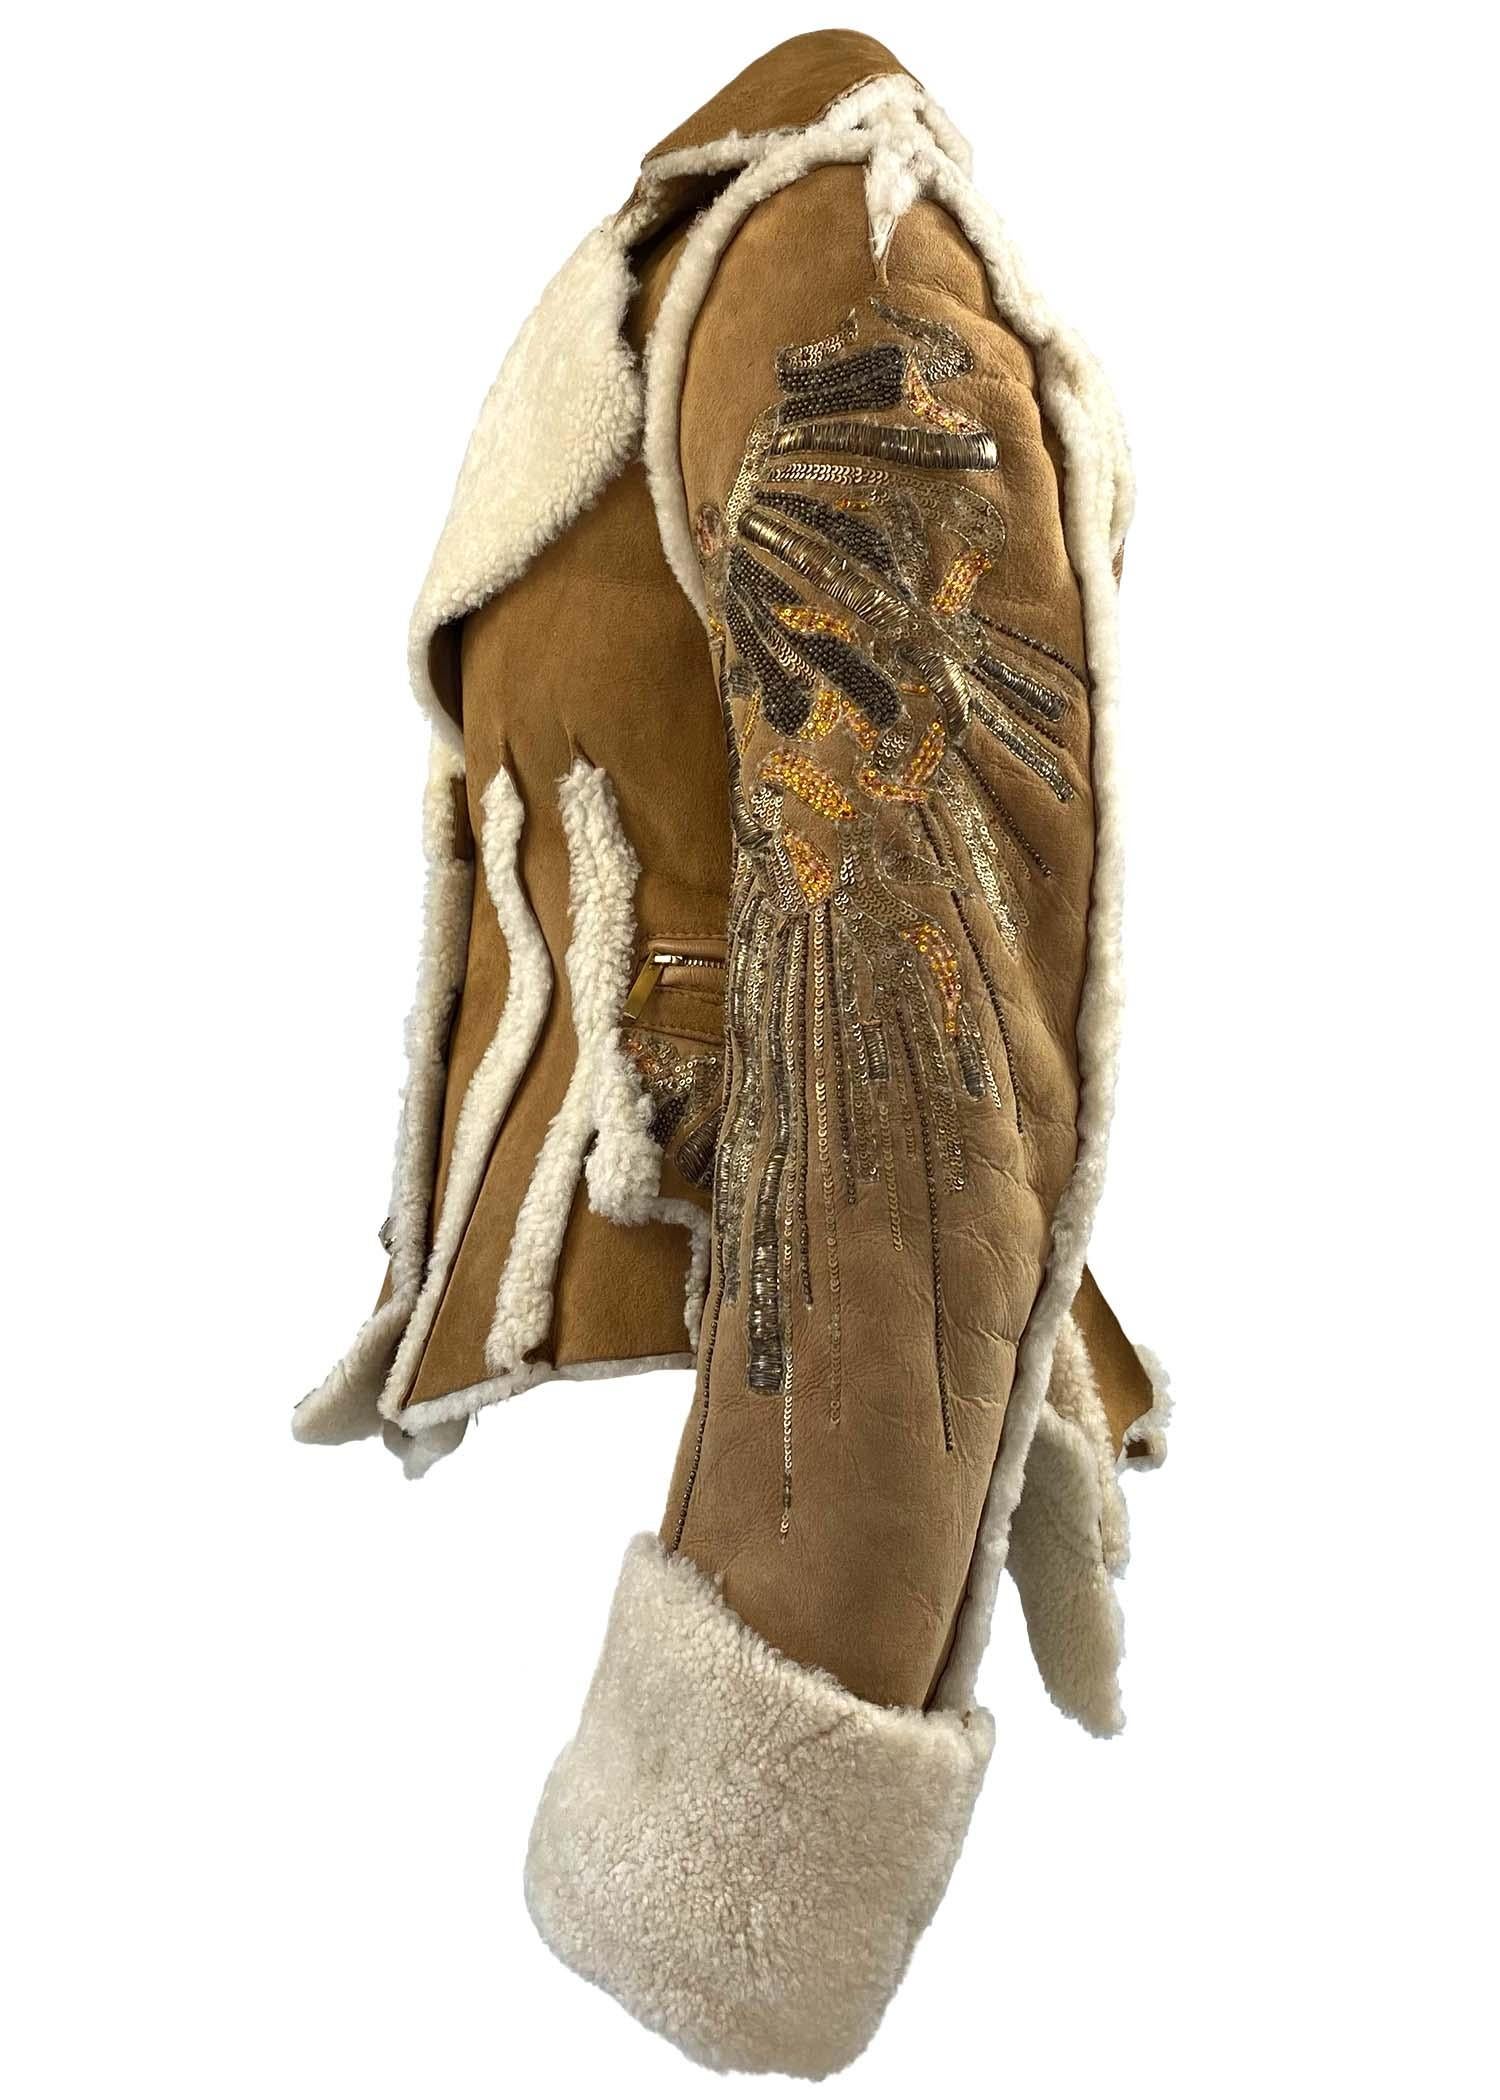 Collectional présente une veste en cuir de licorne de Roberto Cavalli d'une complexité stupéfiante, conçue pour la collection F/W 2004. Cette pièce est une véritable œuvre d'art, dotée de fermetures à boutons transparents surdimensionnés ainsi que